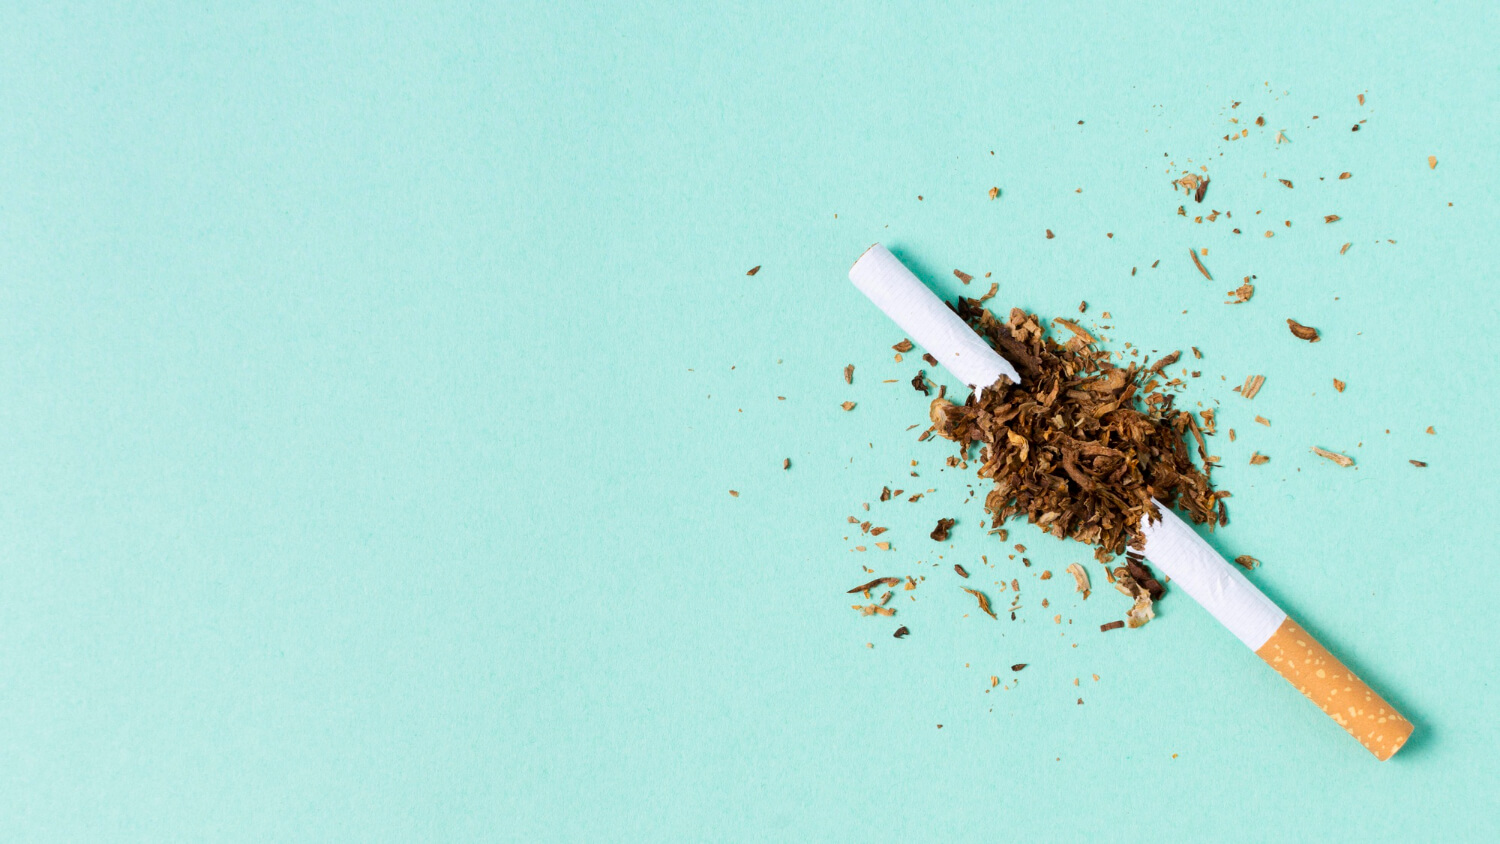 Tutunul - Top 5 curiozități pe care trebuie să le știi despre acesta